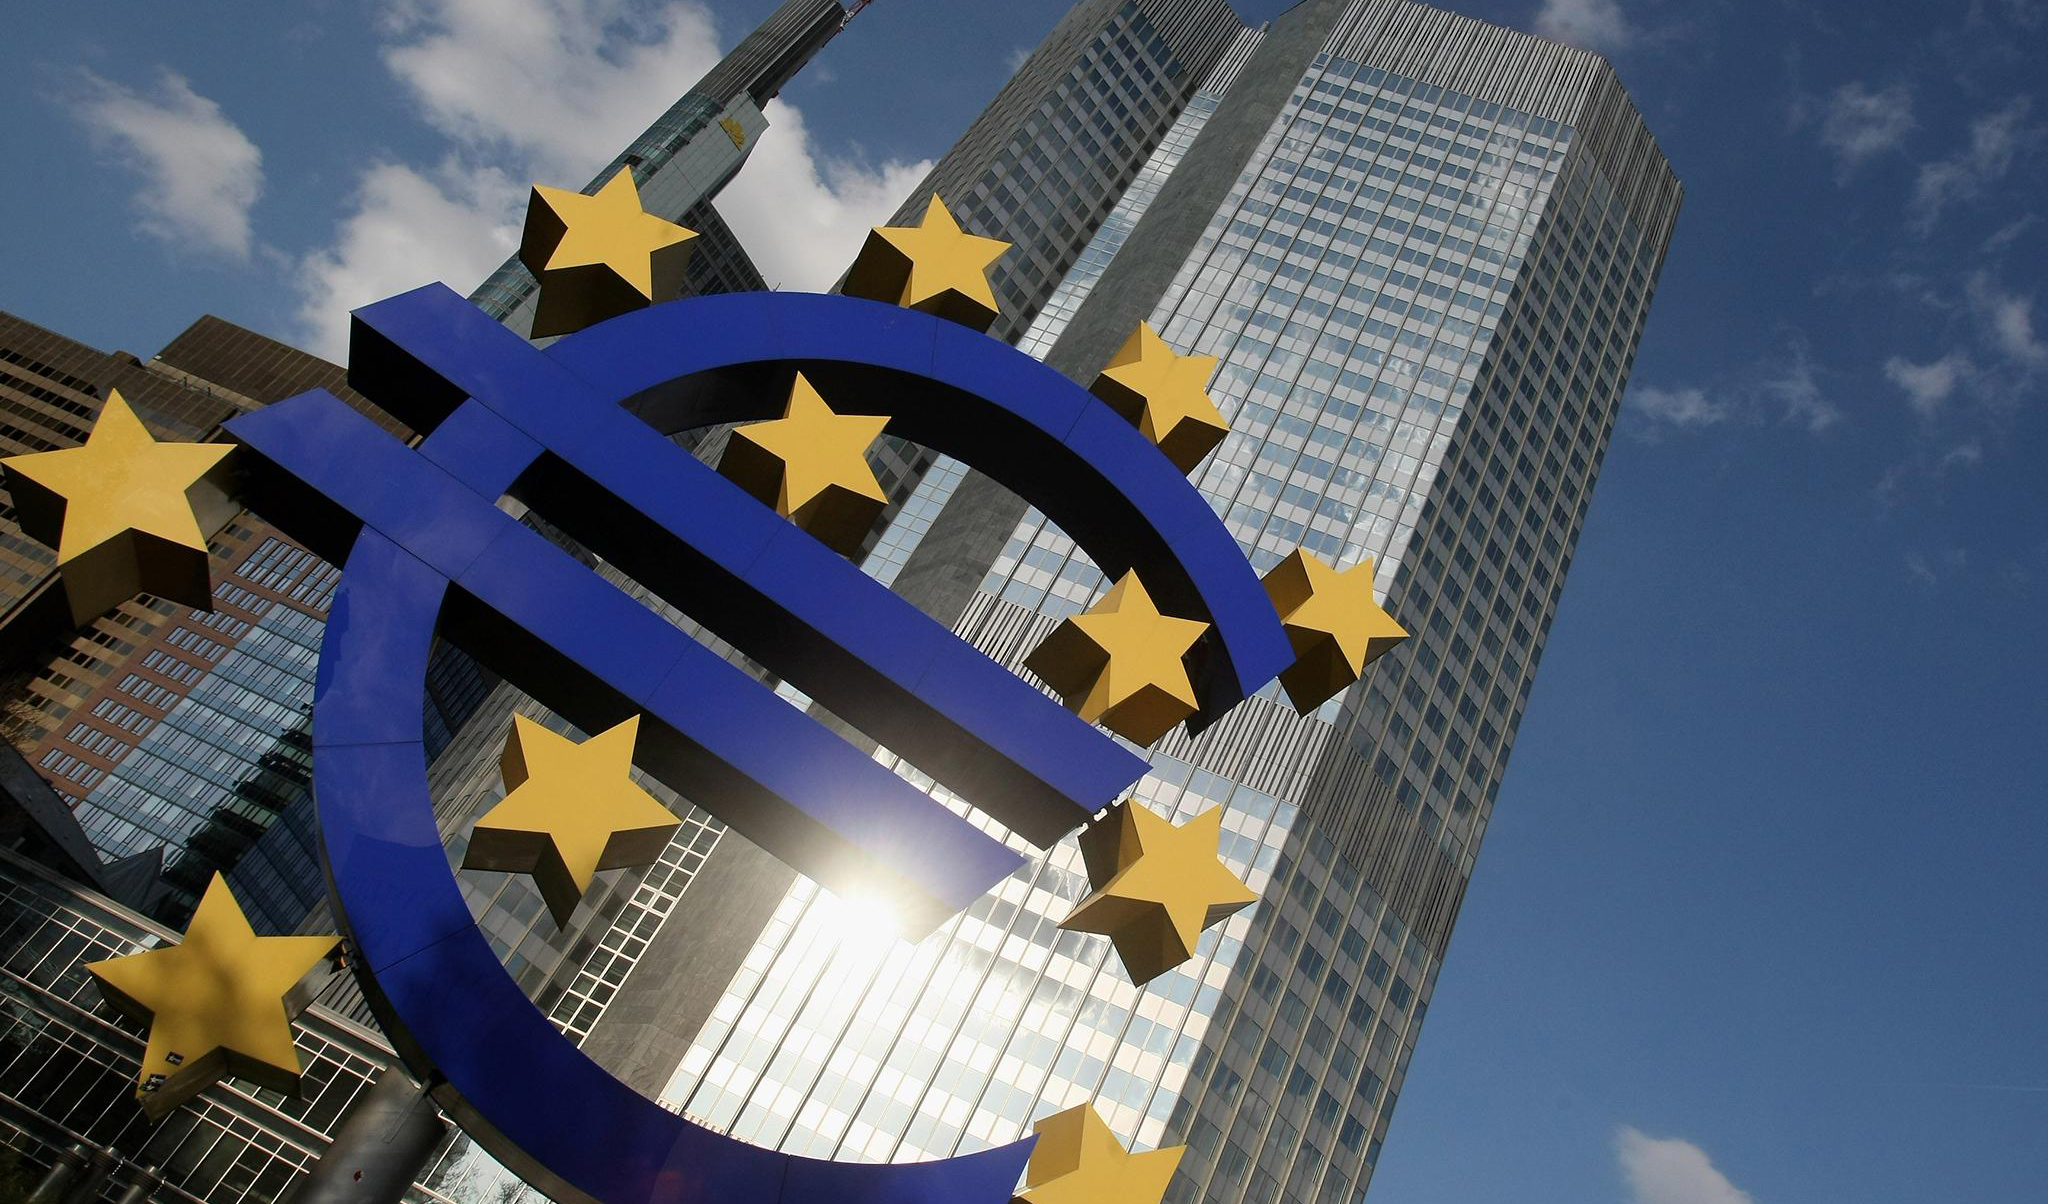 اقتصاد اروپا در یک قدمی رکود